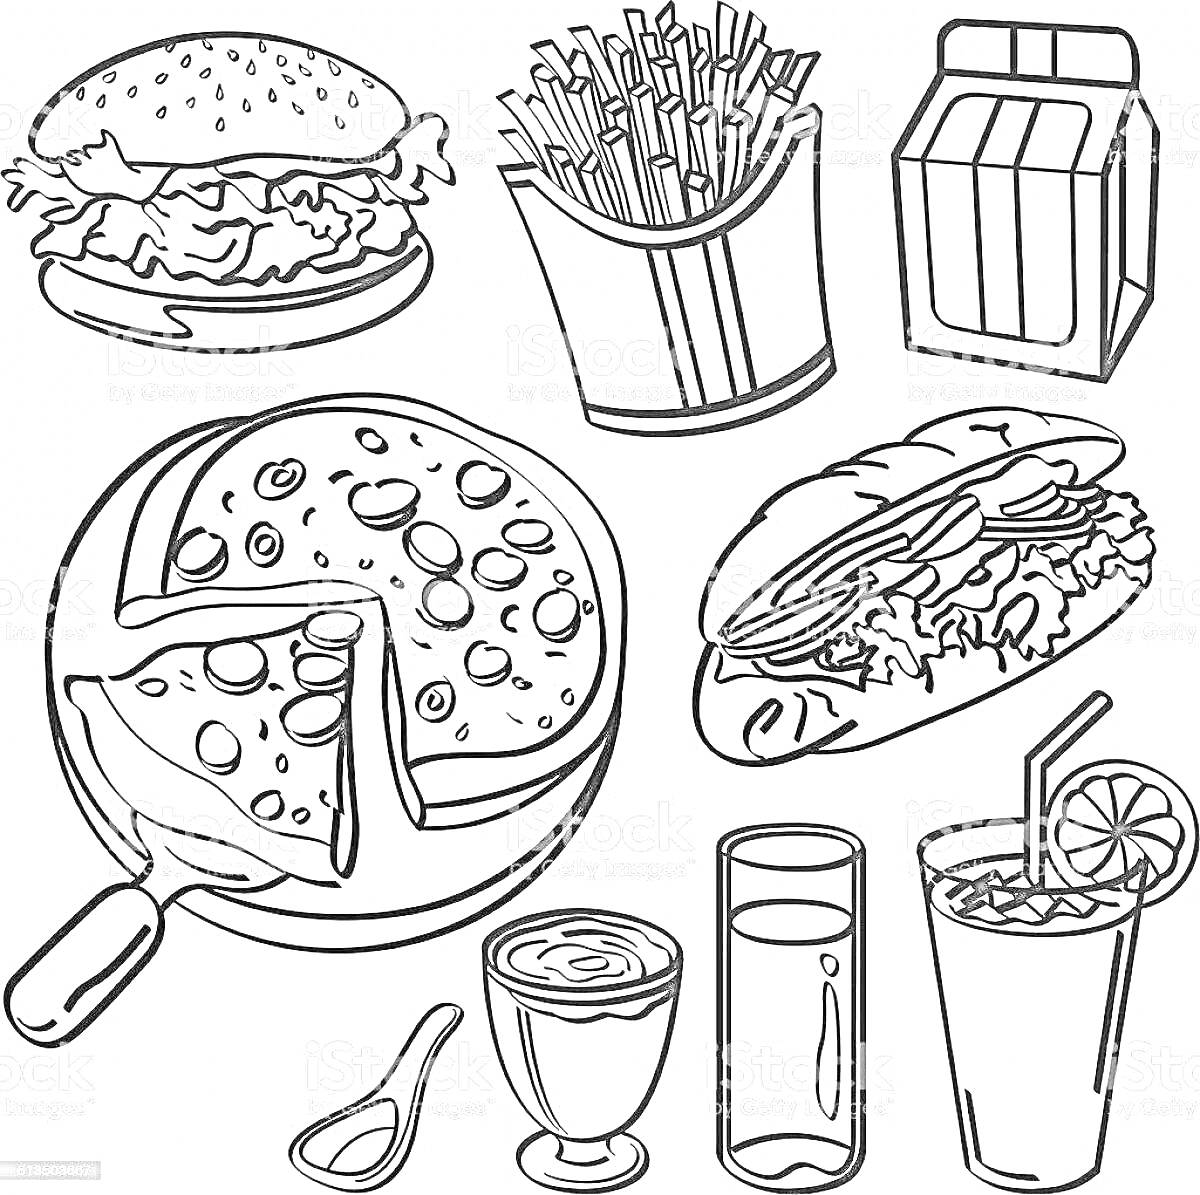 Раскраска Бургер, картофель фри, пакет сока, пицца, подвальный бутерброд, йогурт, чайная ложка, стакан, коктейль со льдом и лимоном